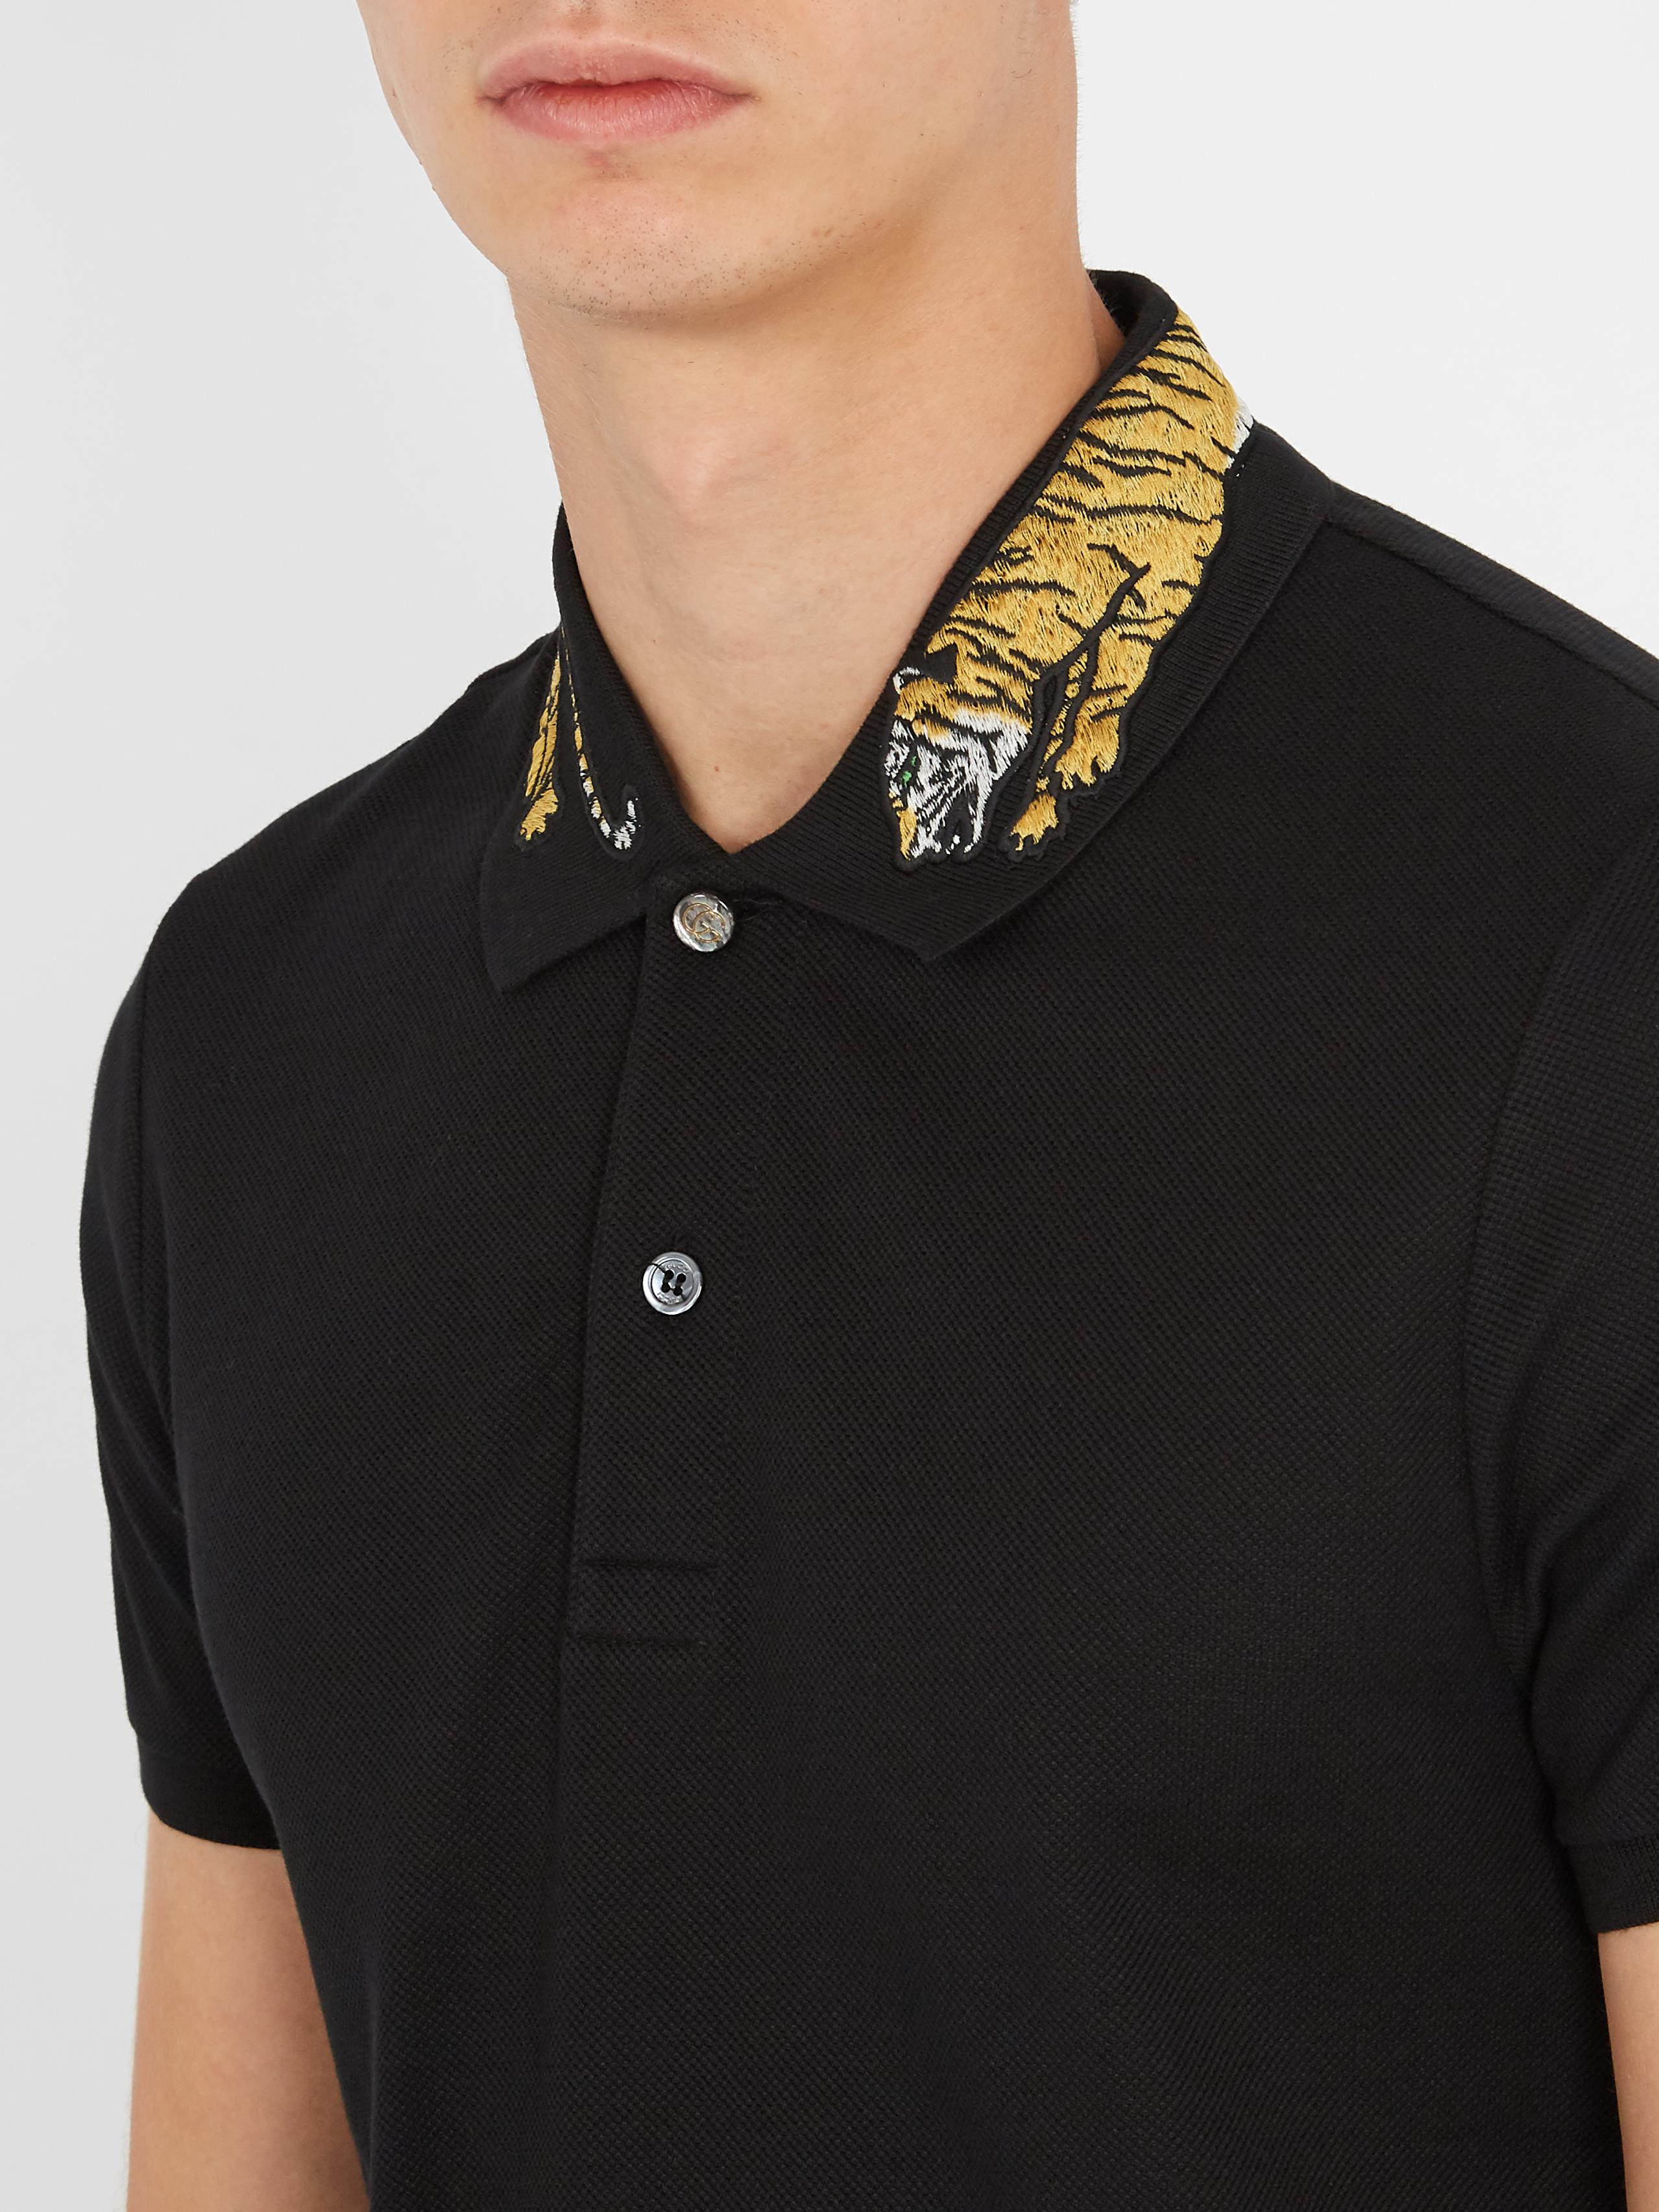 Gucci Tiger-appliqué Cotton-blend Piqué Polo Shirt in Black for Men - Lyst